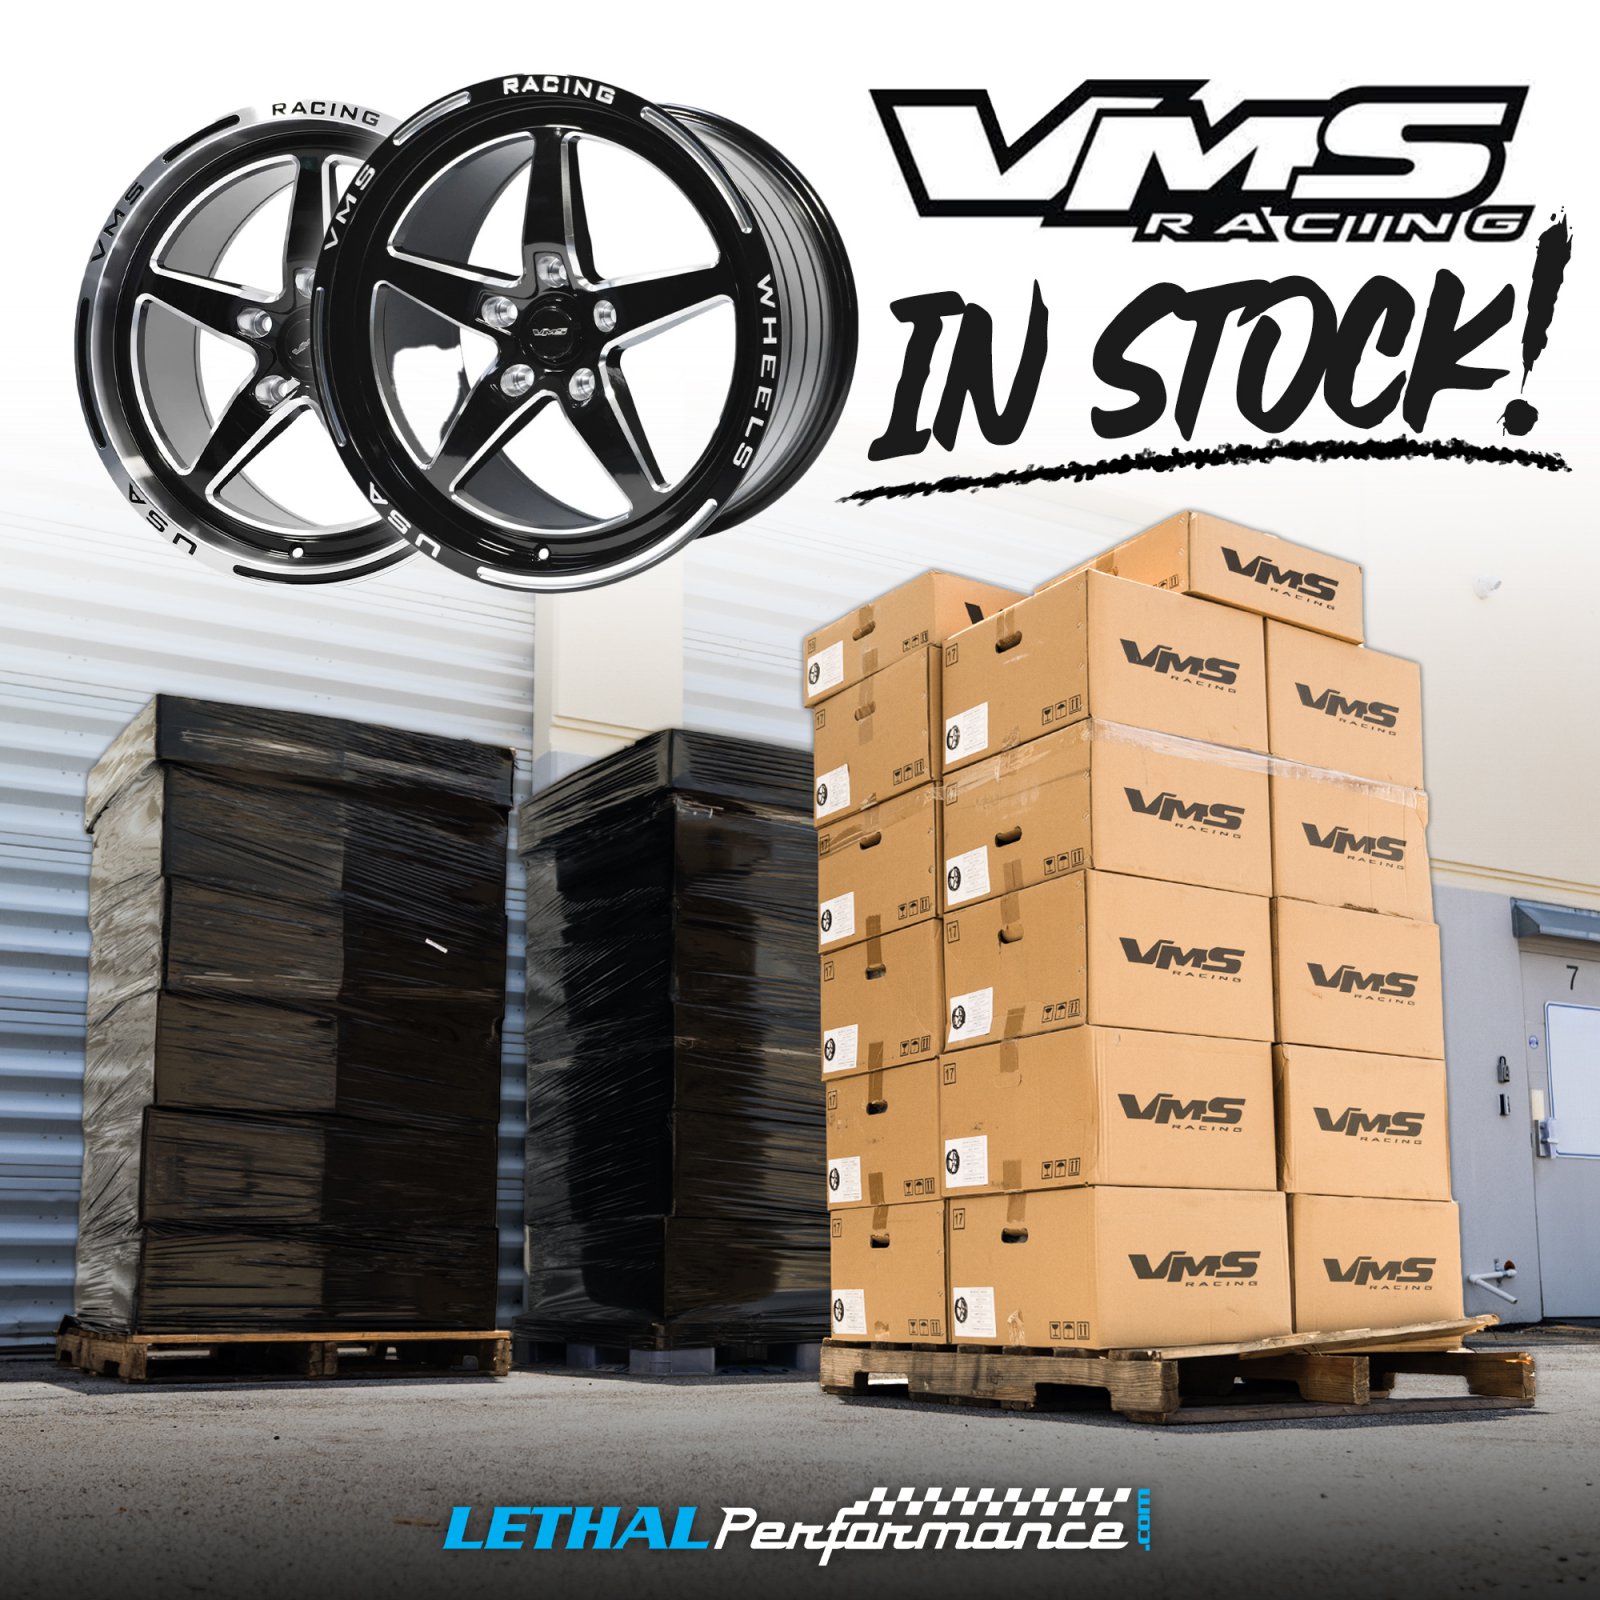 VMS in Stock 7-28.jpg